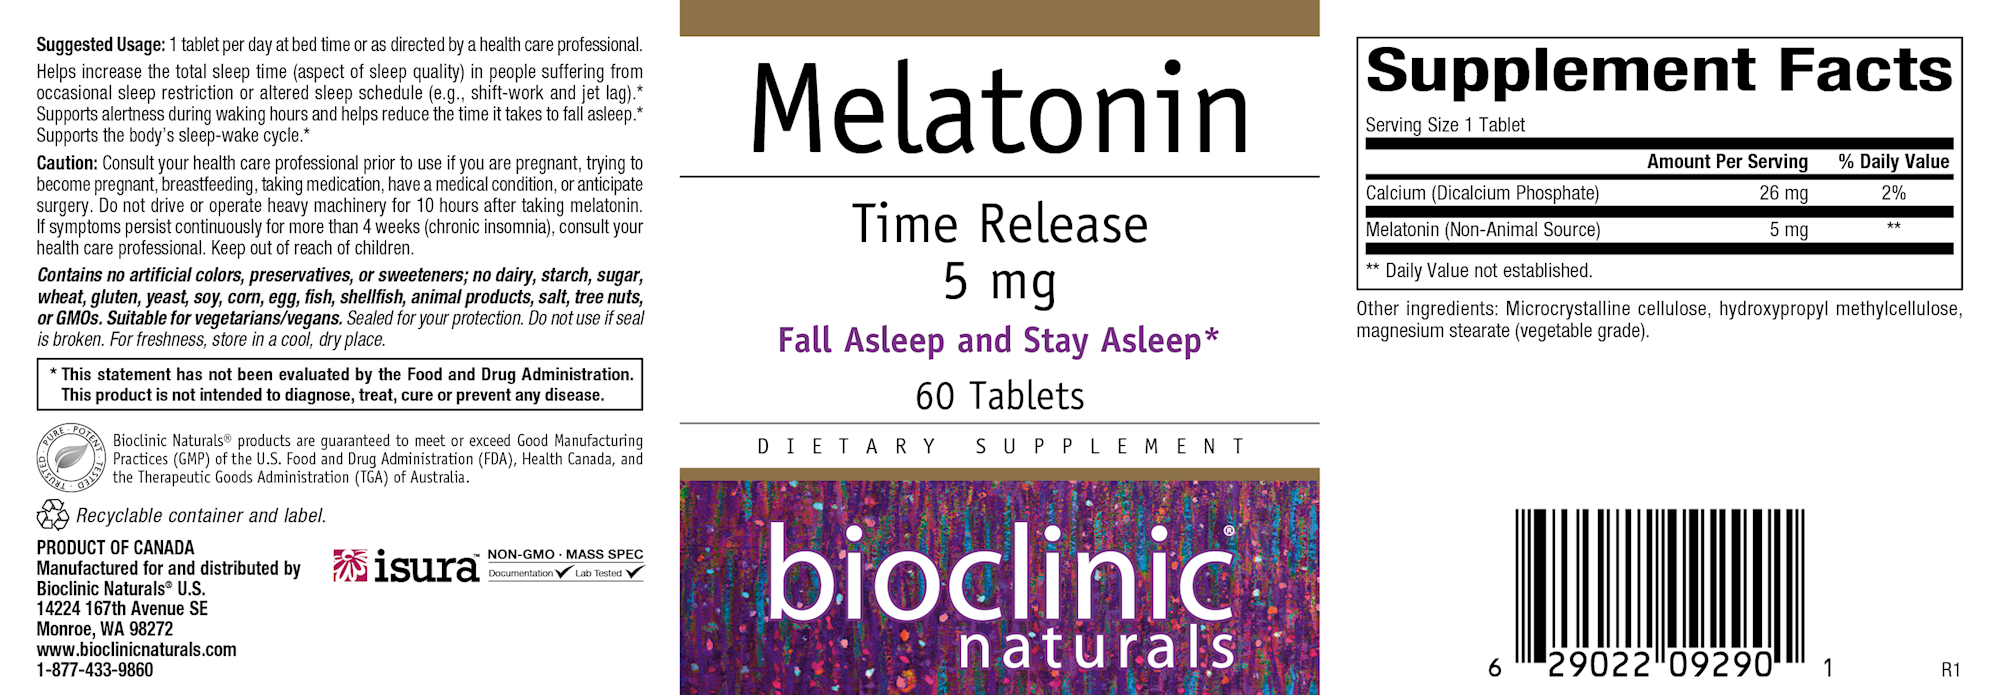 Melatonin Time Release